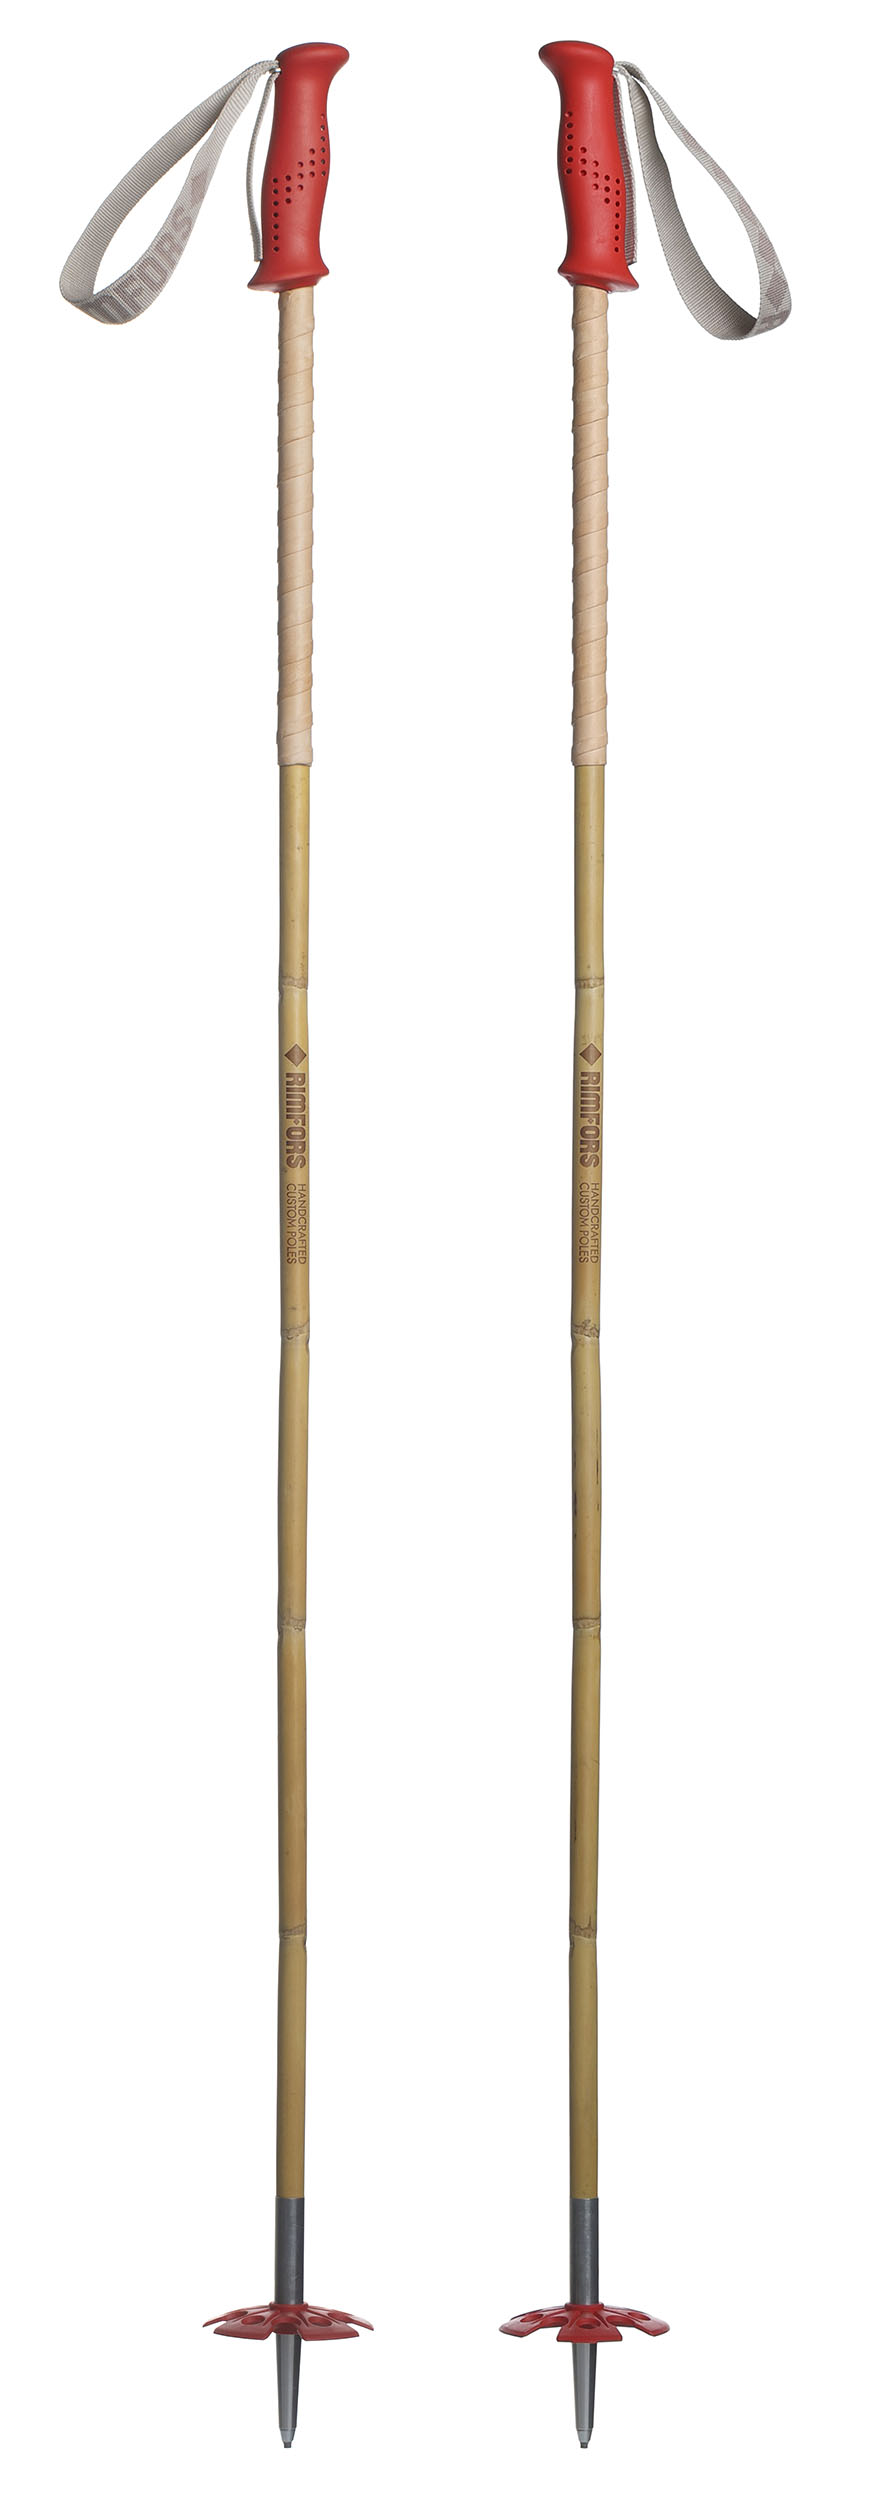 Bambustavar med röda handtag och trugor (90 mm) + förlängt grepp av renskinn.